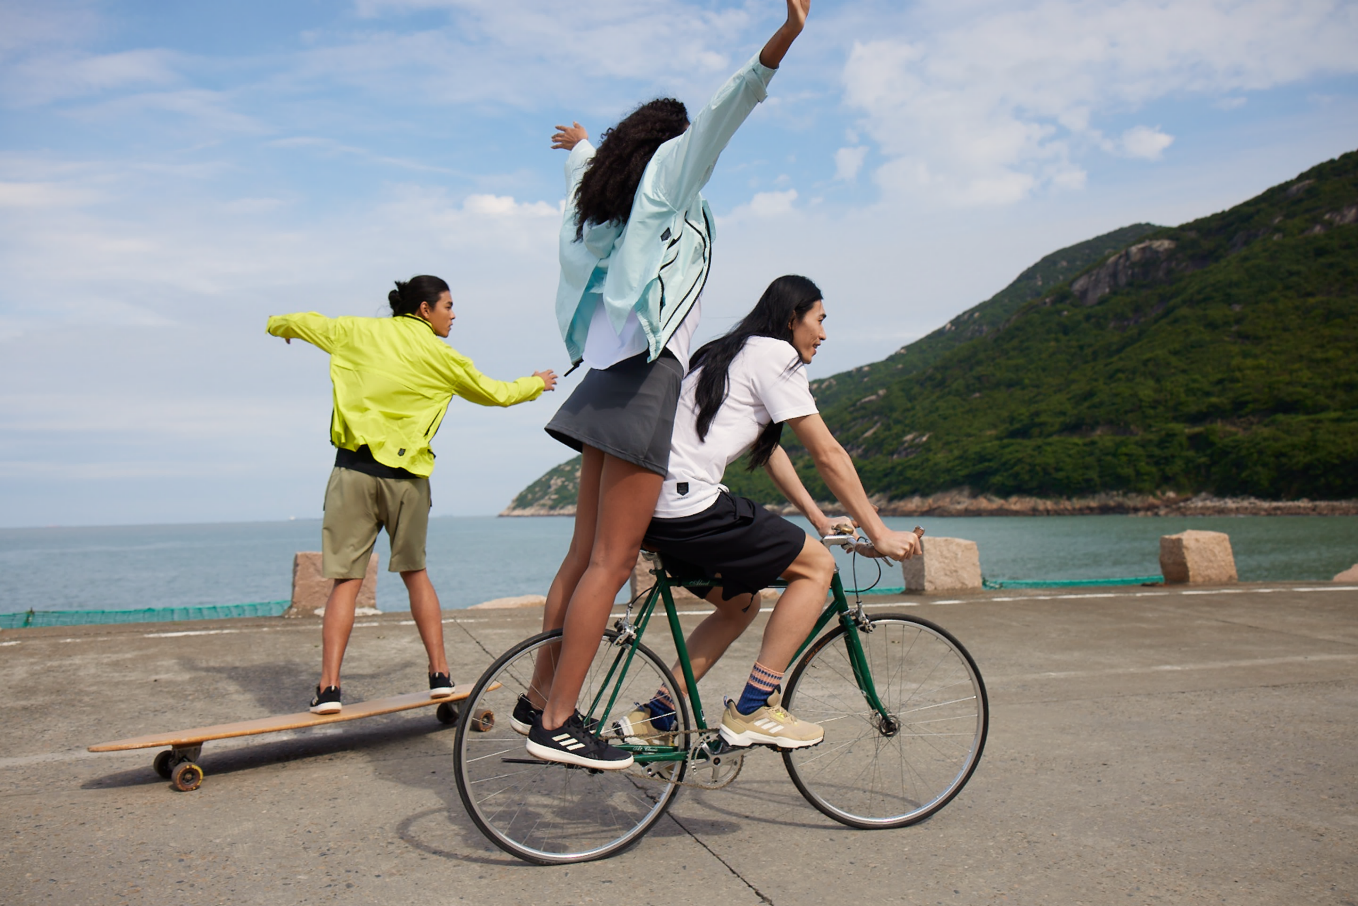 男人和女人在沙滩上骑自行车

描述已自动生成